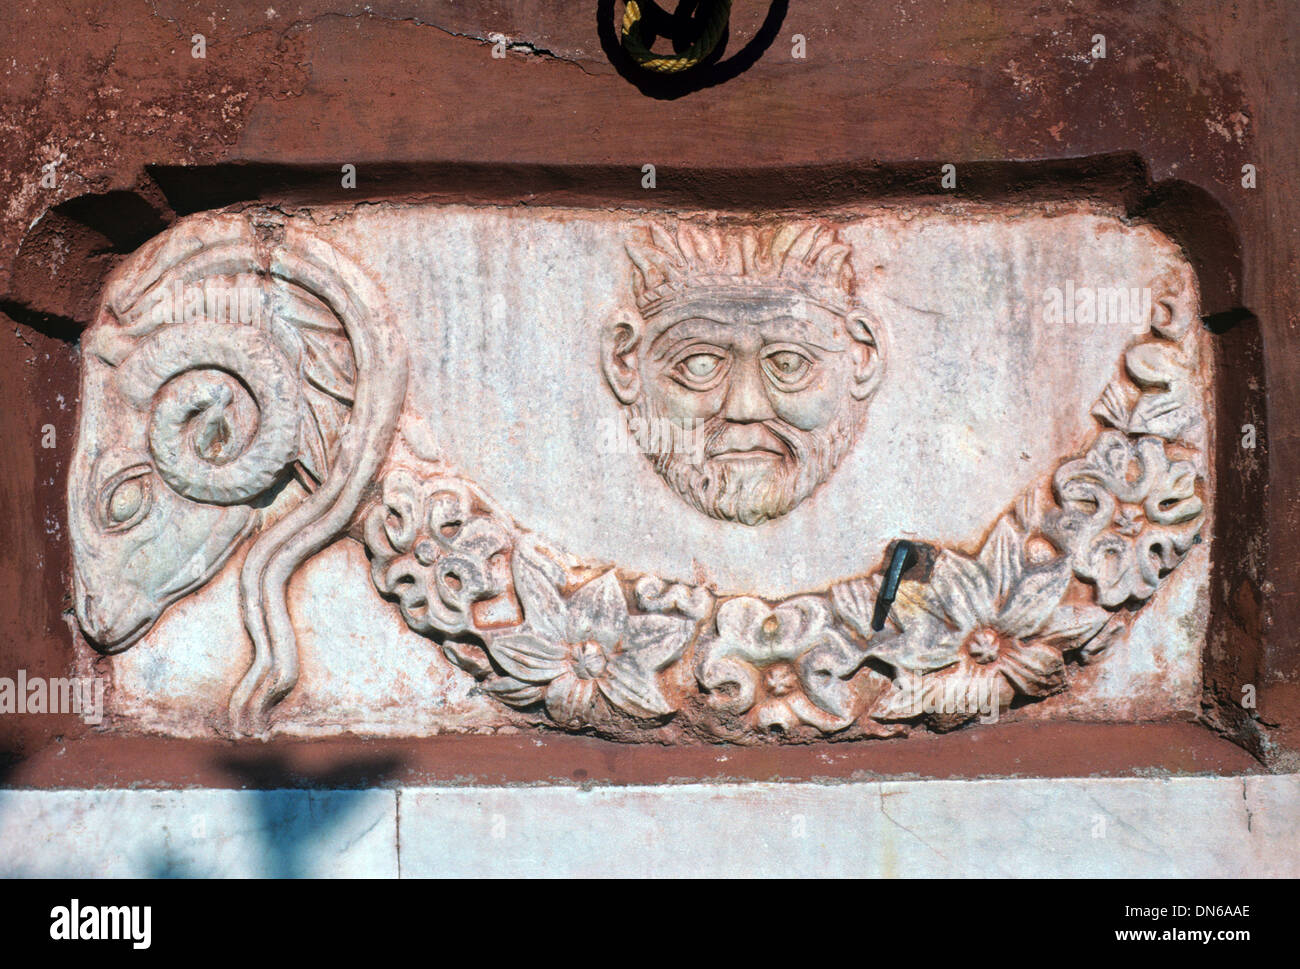 Klassische griechische heidnischen Skulpturen der Narr & Ram in der Wand, in der Kirche oder Catholicon des Kloster Vatopedi Berg Athos Griechenland Stockfoto